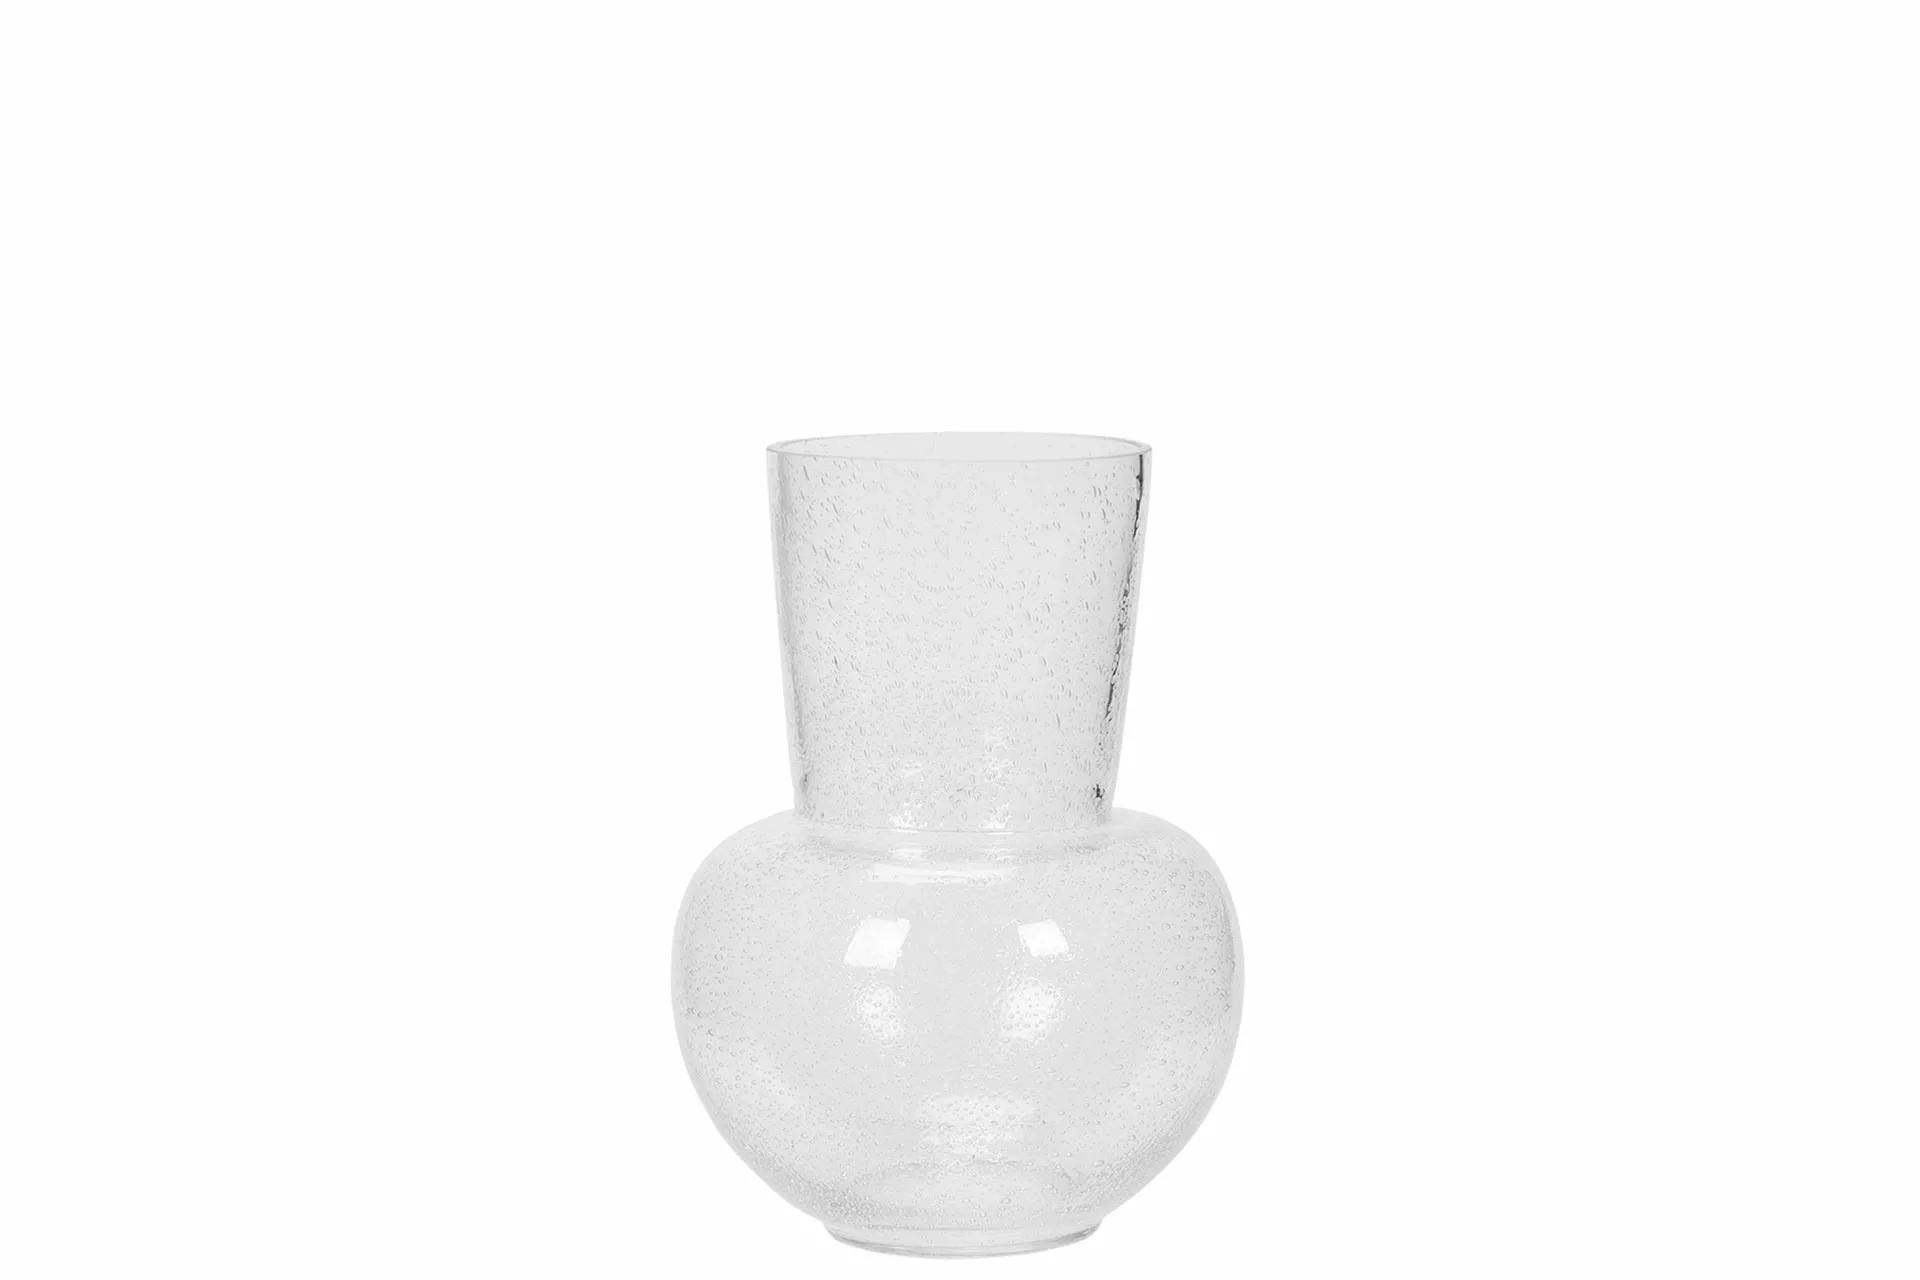 Vas Bubbles, klarglas - A Lot Decoration